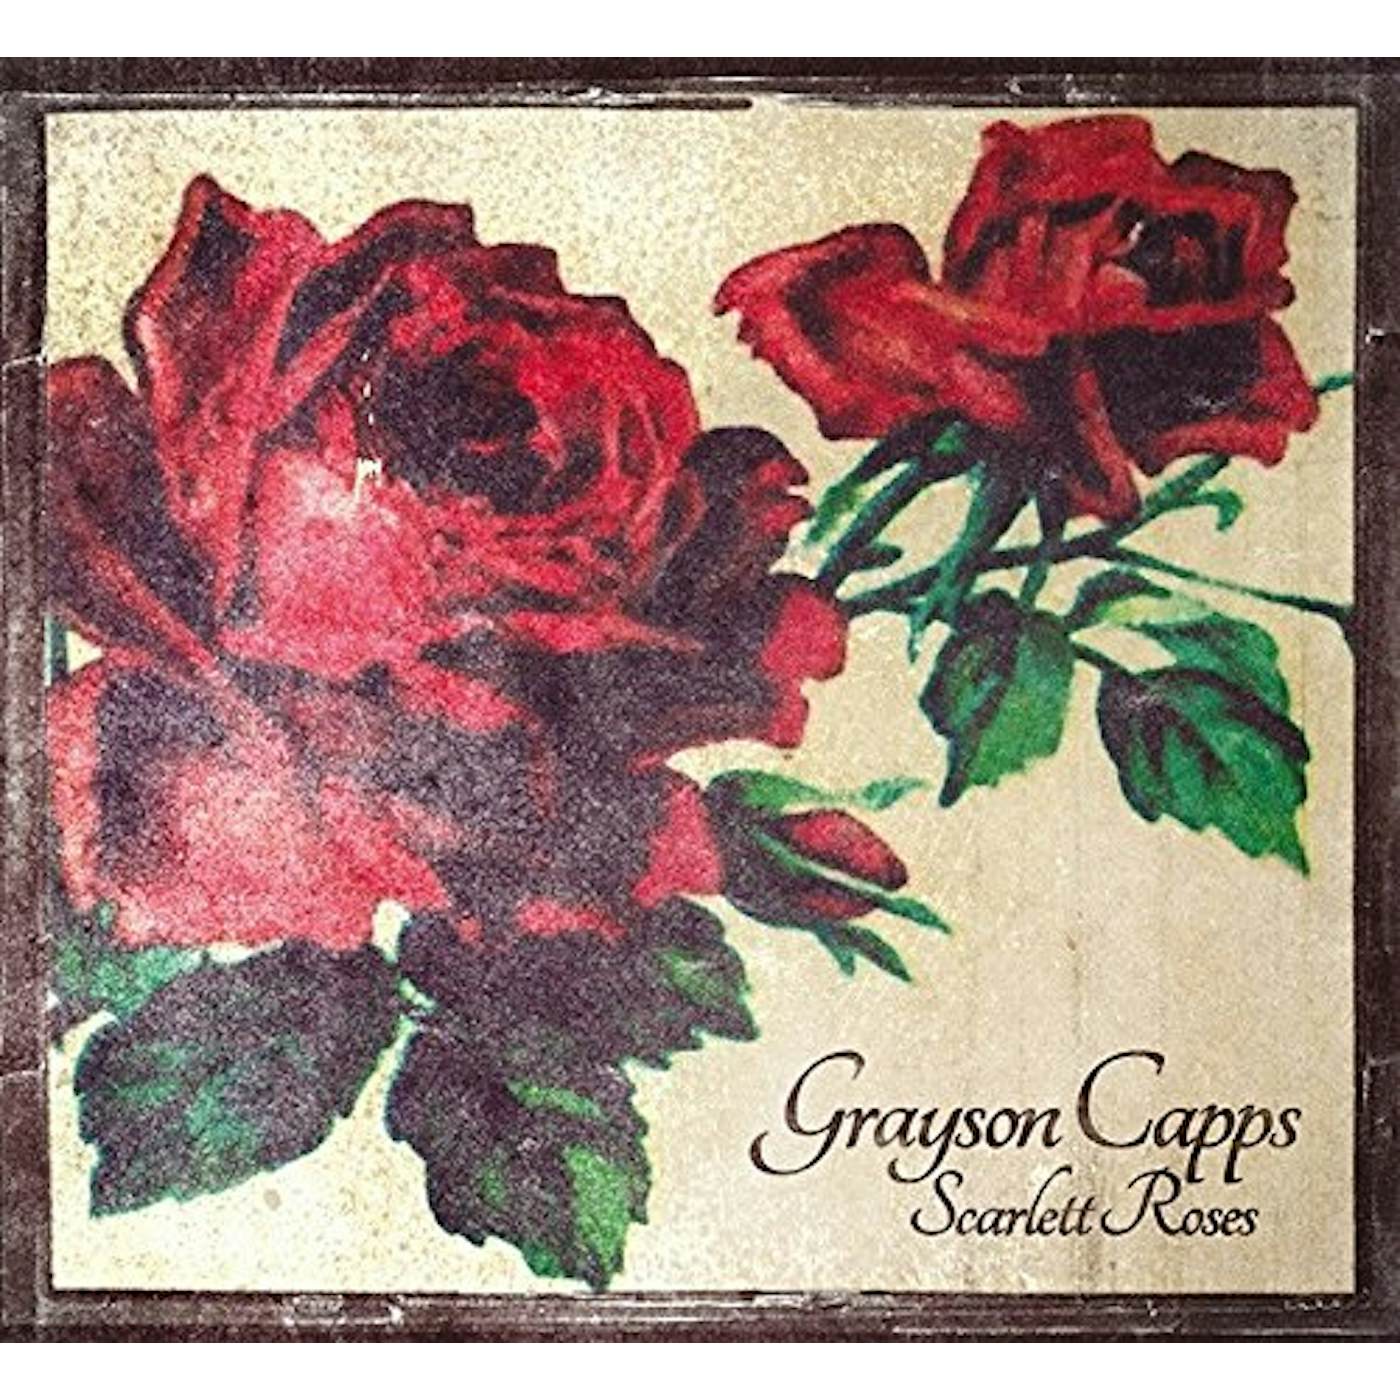 Grayson Capps SCARLETT ROSE CD